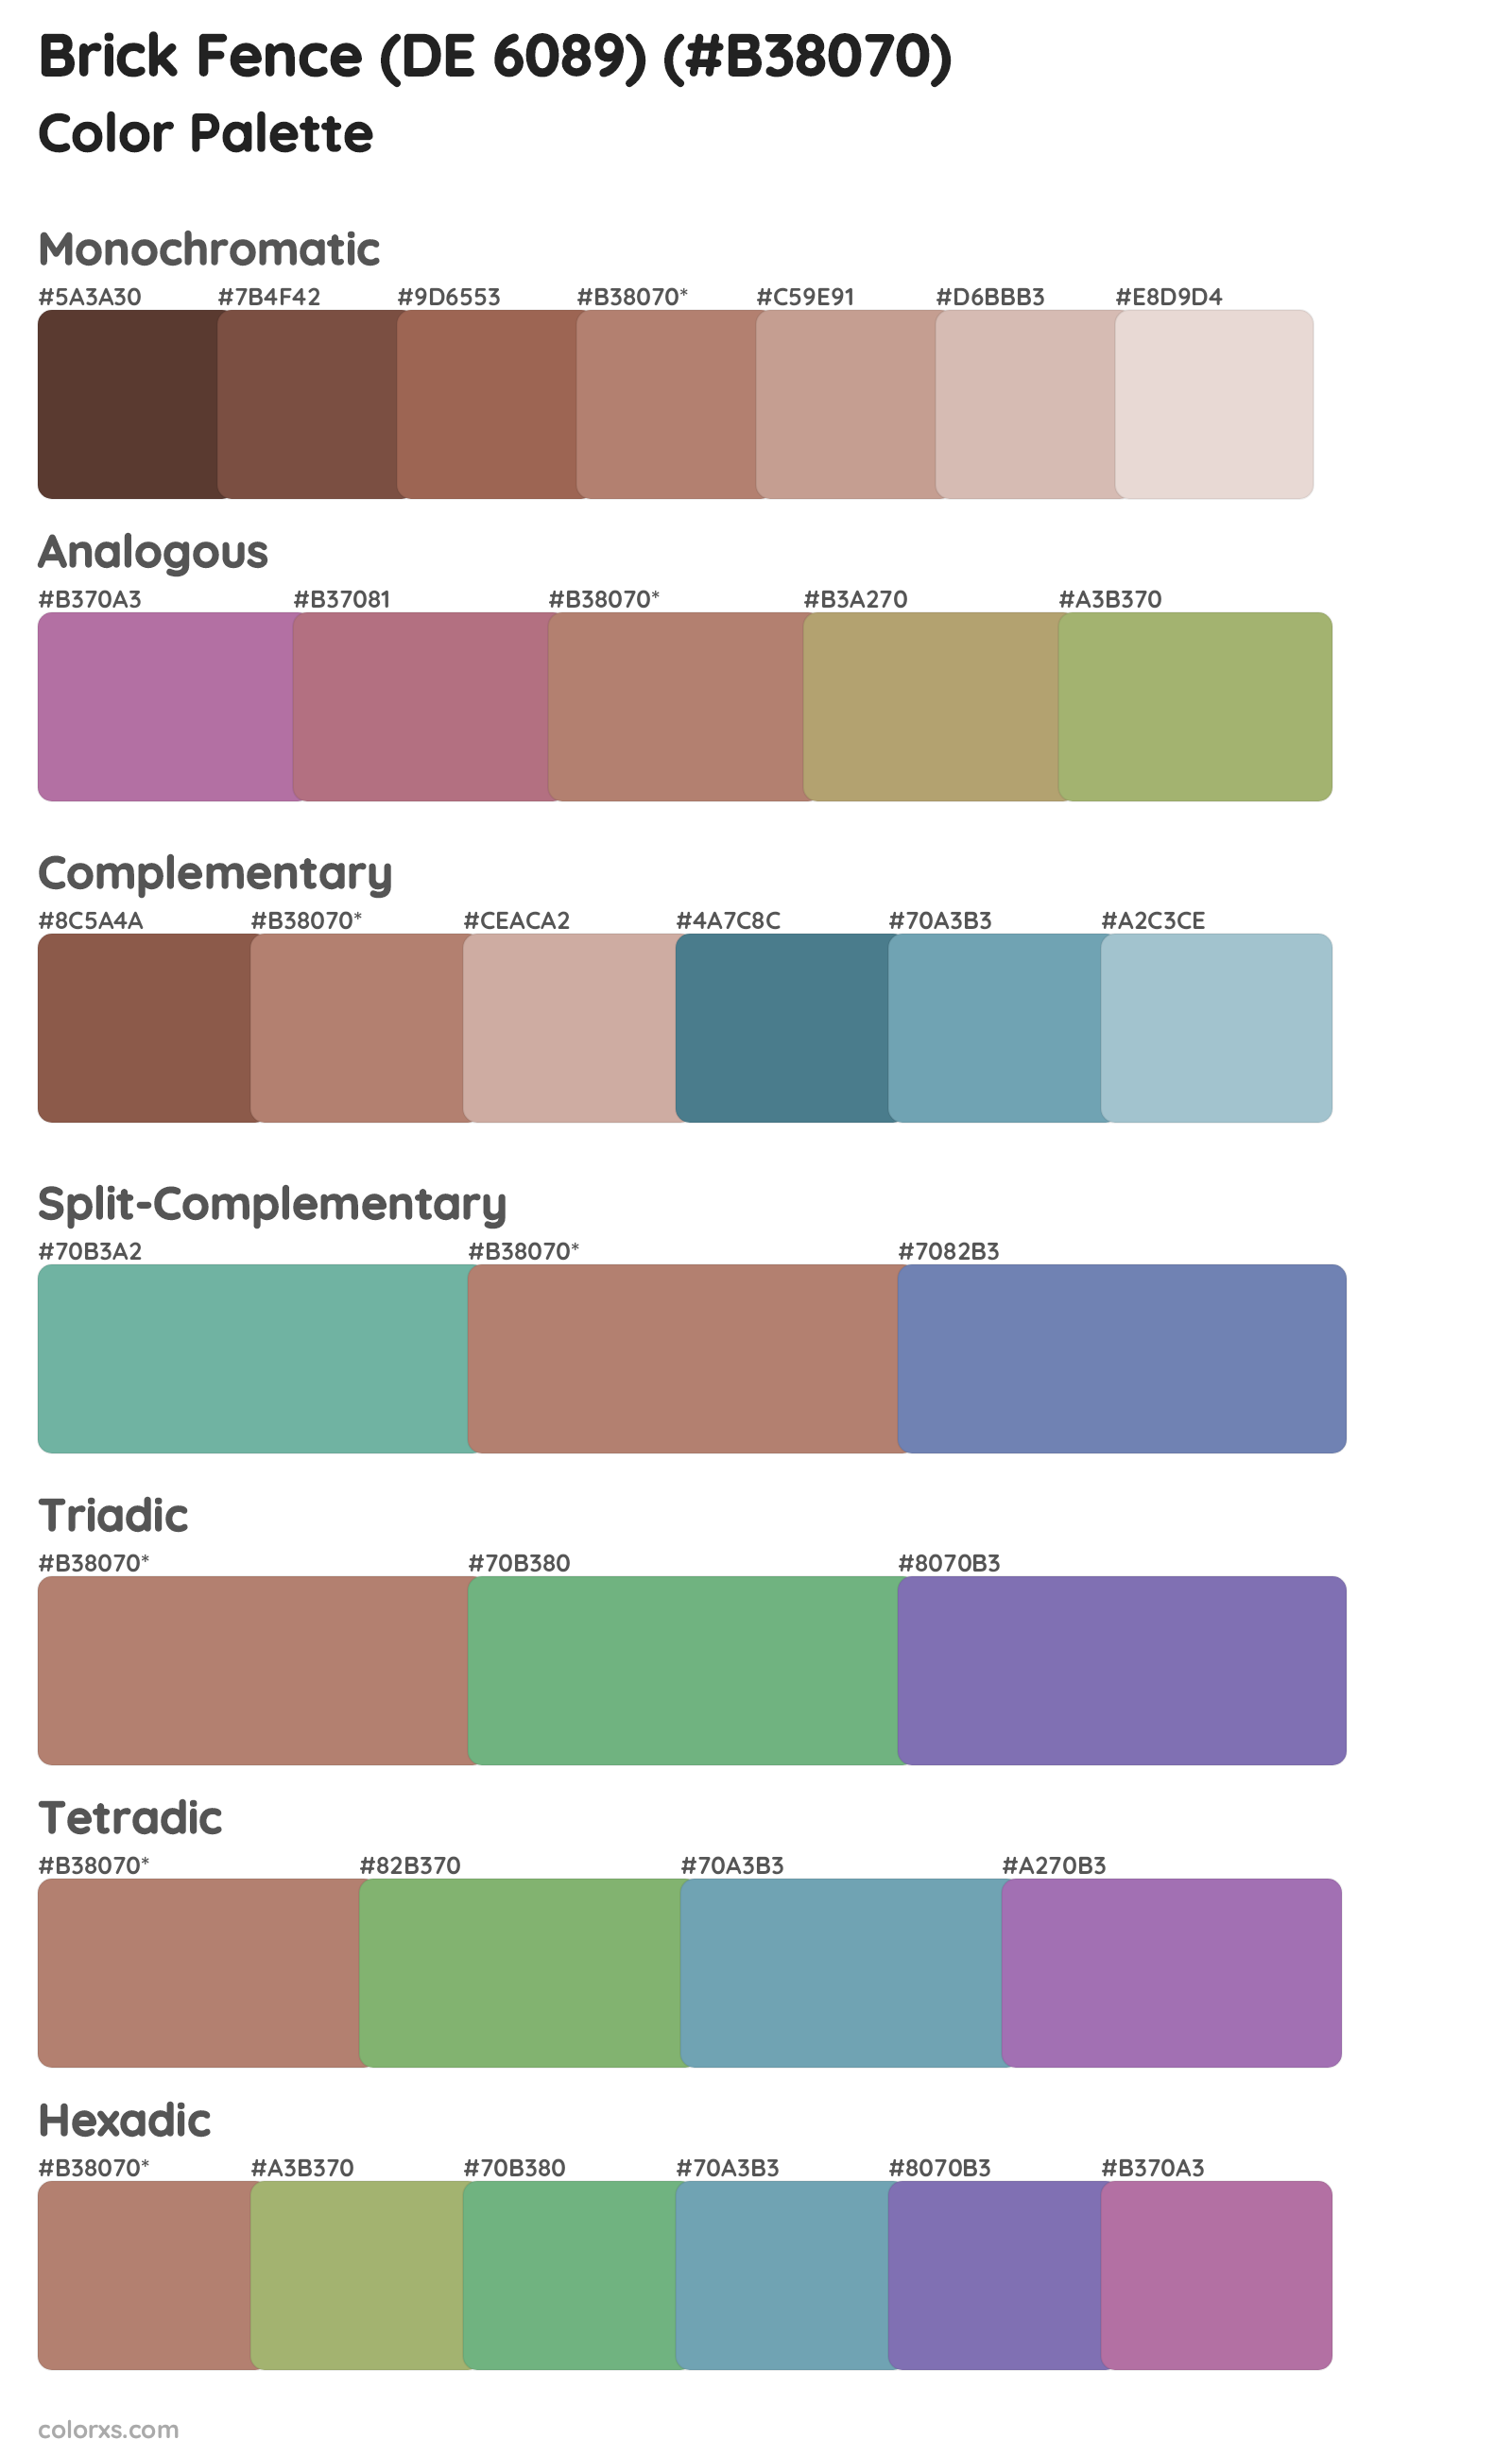 Brick Fence (DE 6089) Color Scheme Palettes